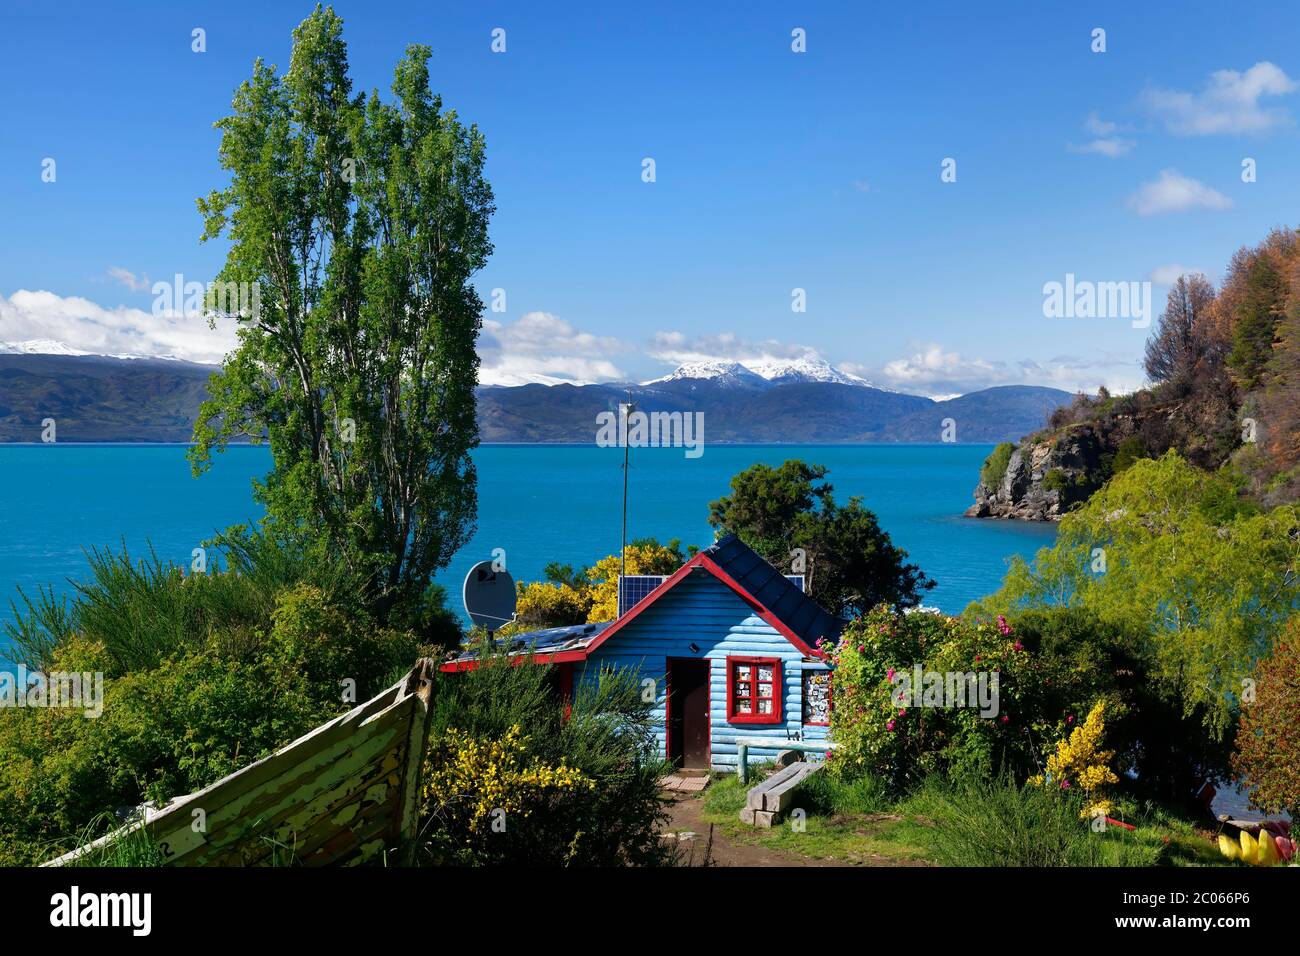 Casa colorata sul lago General Carrera, Puerto Rio Tranquilo, Carretera Austral, Regione di Aysen, Patagonia, Cile Foto Stock